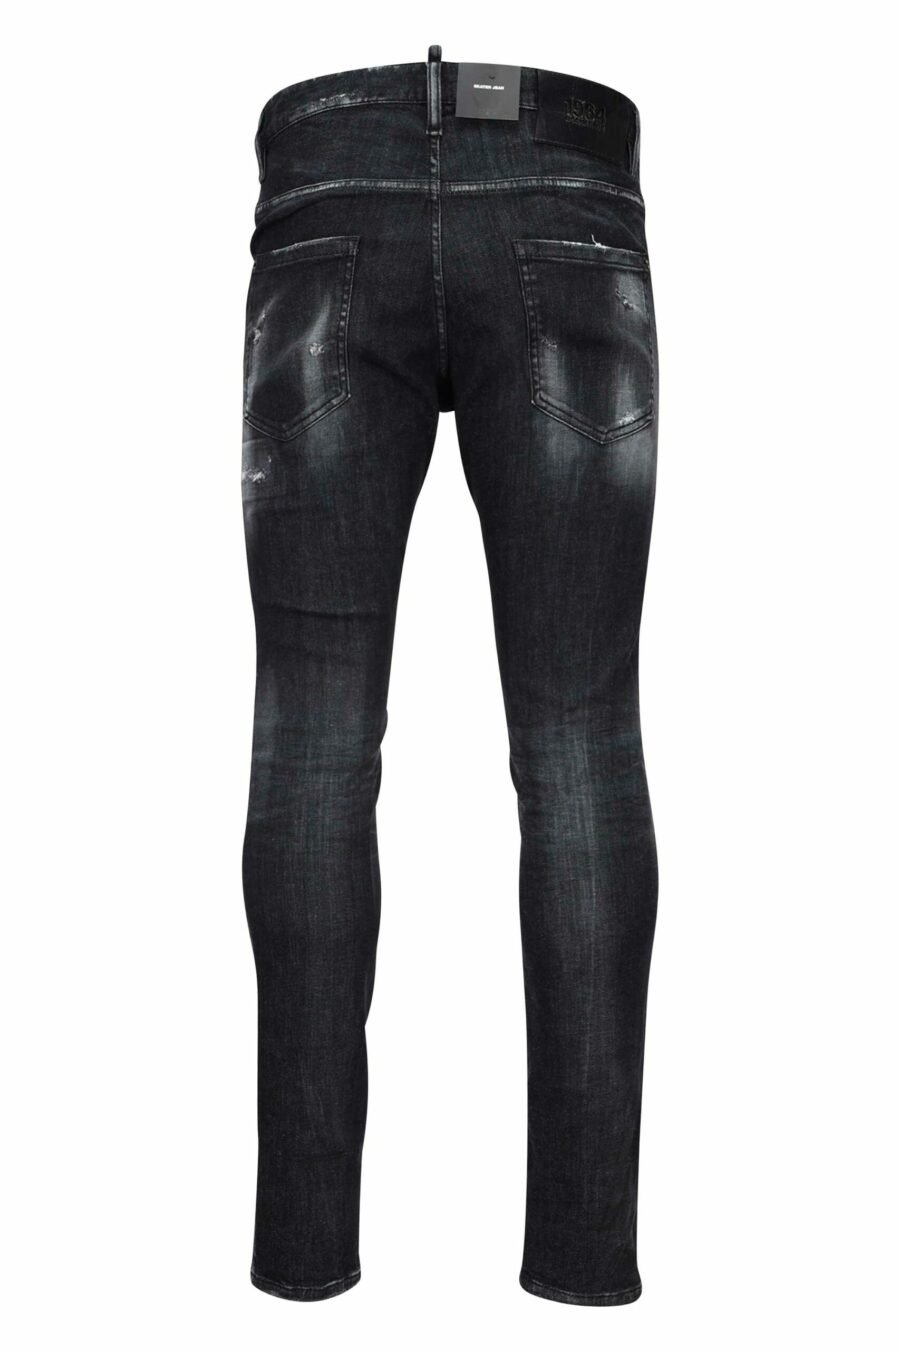 Pantalon Skater jean noir déchiré et semi-usé - 8054148101411 2 échelle